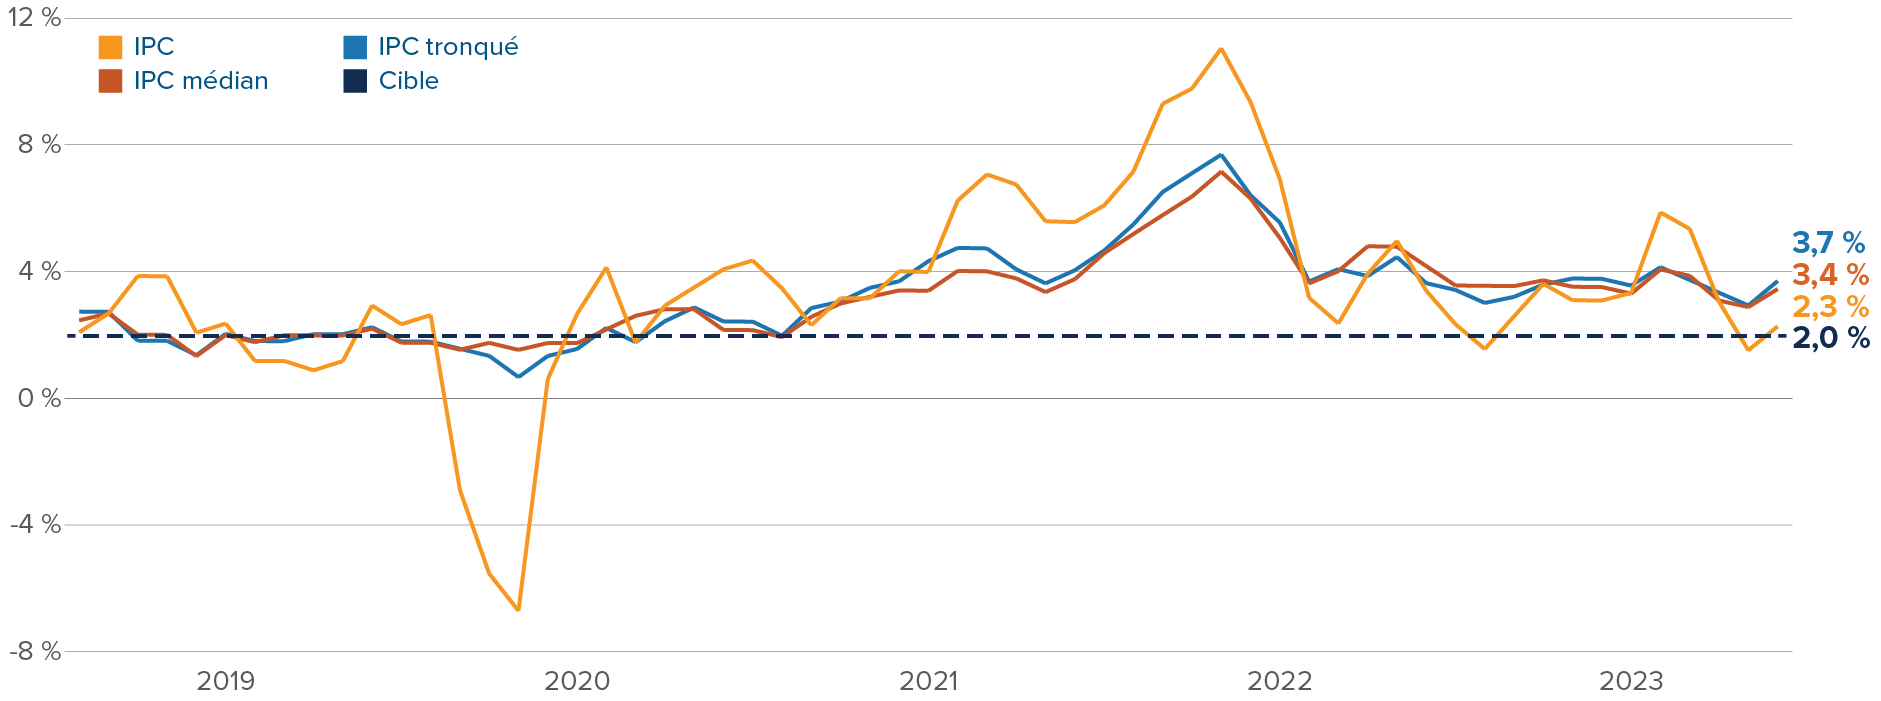 Graphique : L’inflation au Canada reste supérieure à l’objectif de la Banque du Canada. L’IPC est de 2,3 %; l’IPC médian est de 3,4 %; l’IPC tronqué est de 3,7 %.